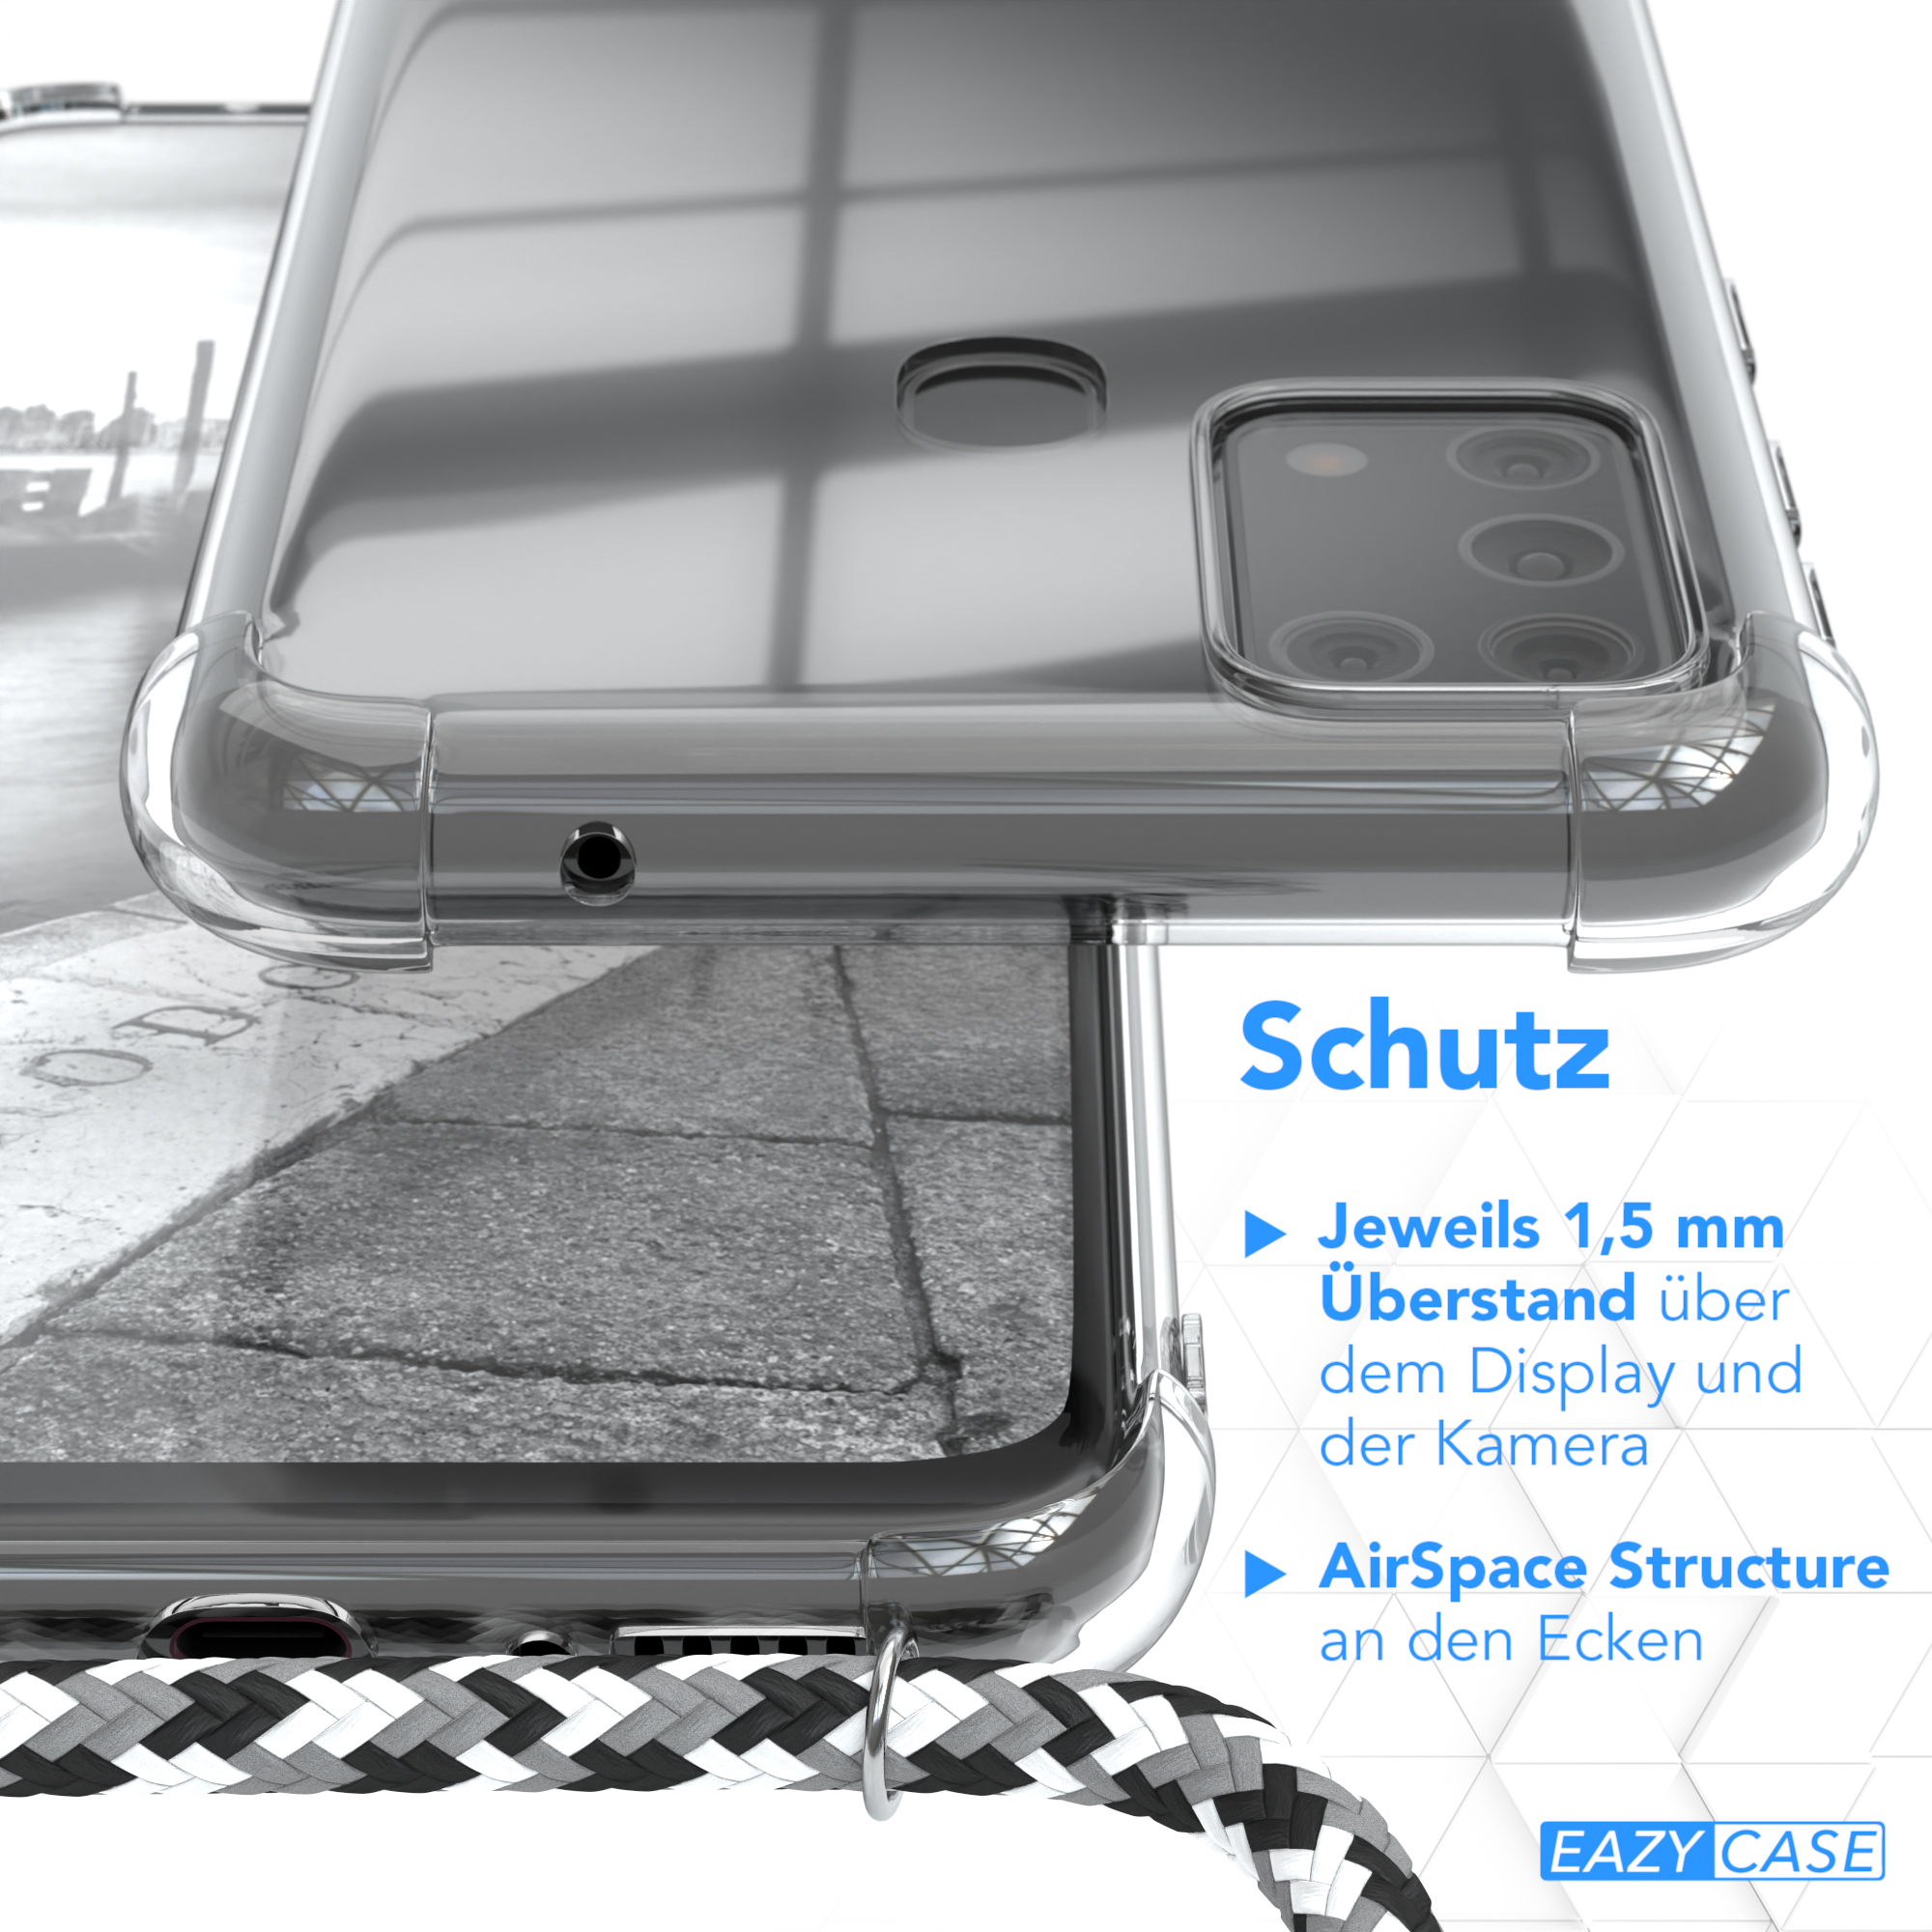 EAZY CASE Clear mit Galaxy Cover Samsung, Schwarz Silber / Umhängetasche, Camouflage M31, Umhängeband, Clips